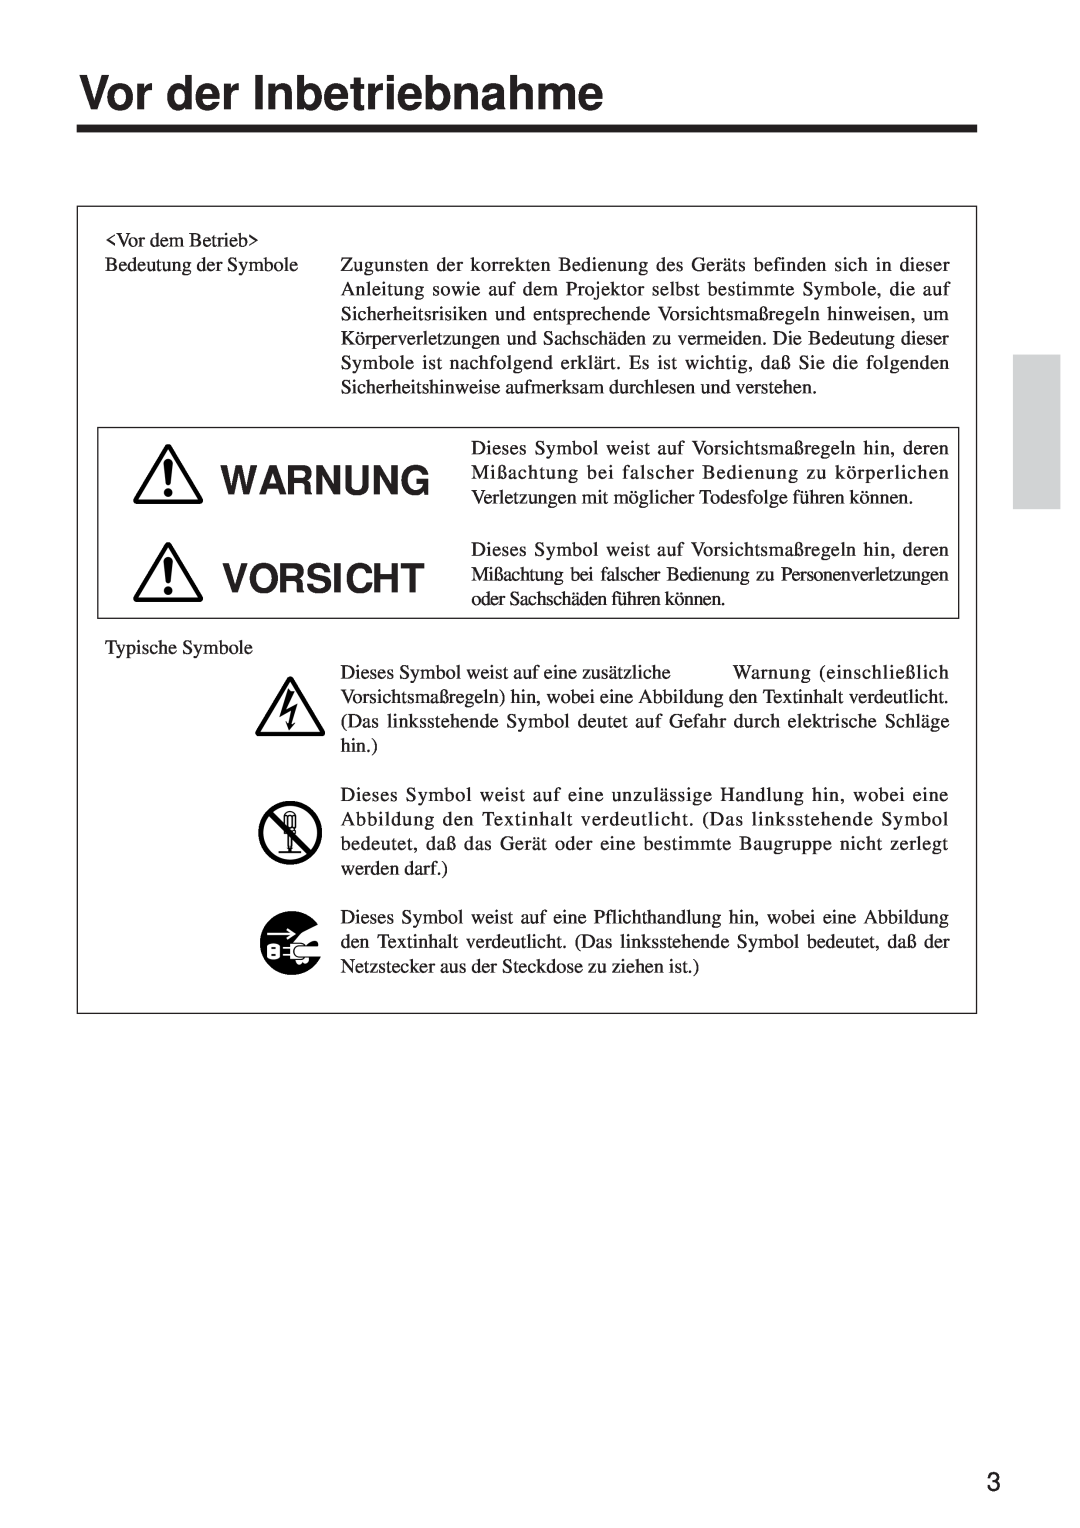 BOXLIGHT MP-650i user manual Vor der Inbetriebnahme, Warnung Vorsicht 